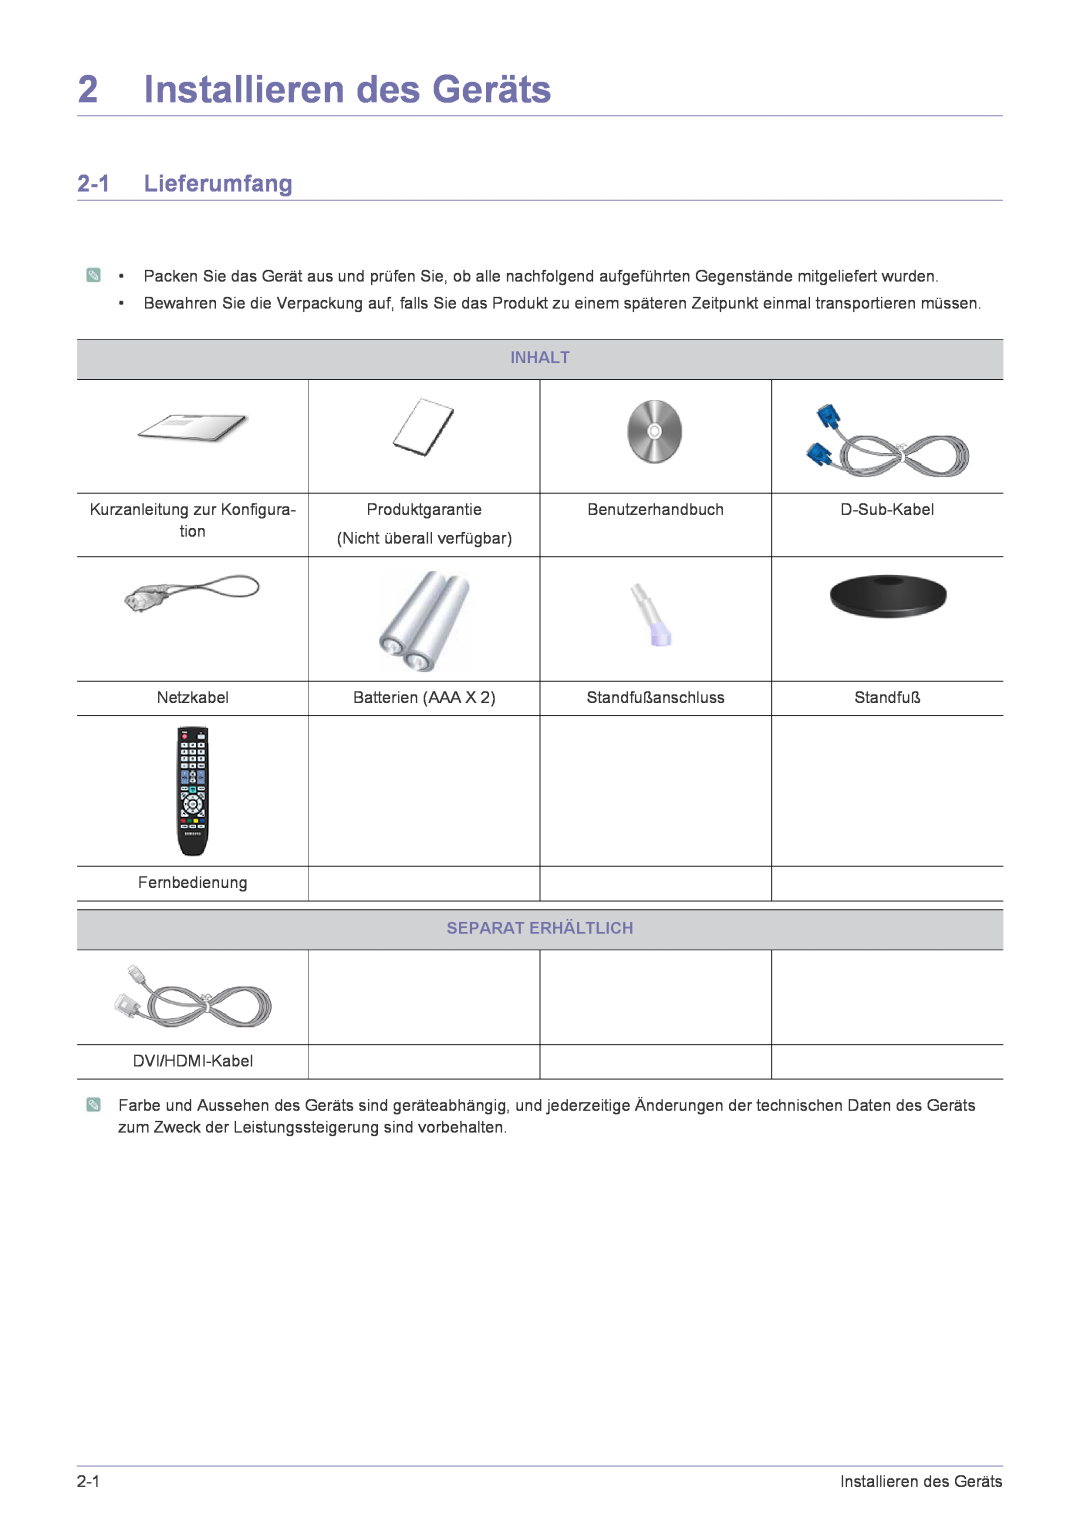 Samsung LS24EMLKF/EN manual Installieren des Geräts, Lieferumfang, Inhalt, Separat Erhältlich 